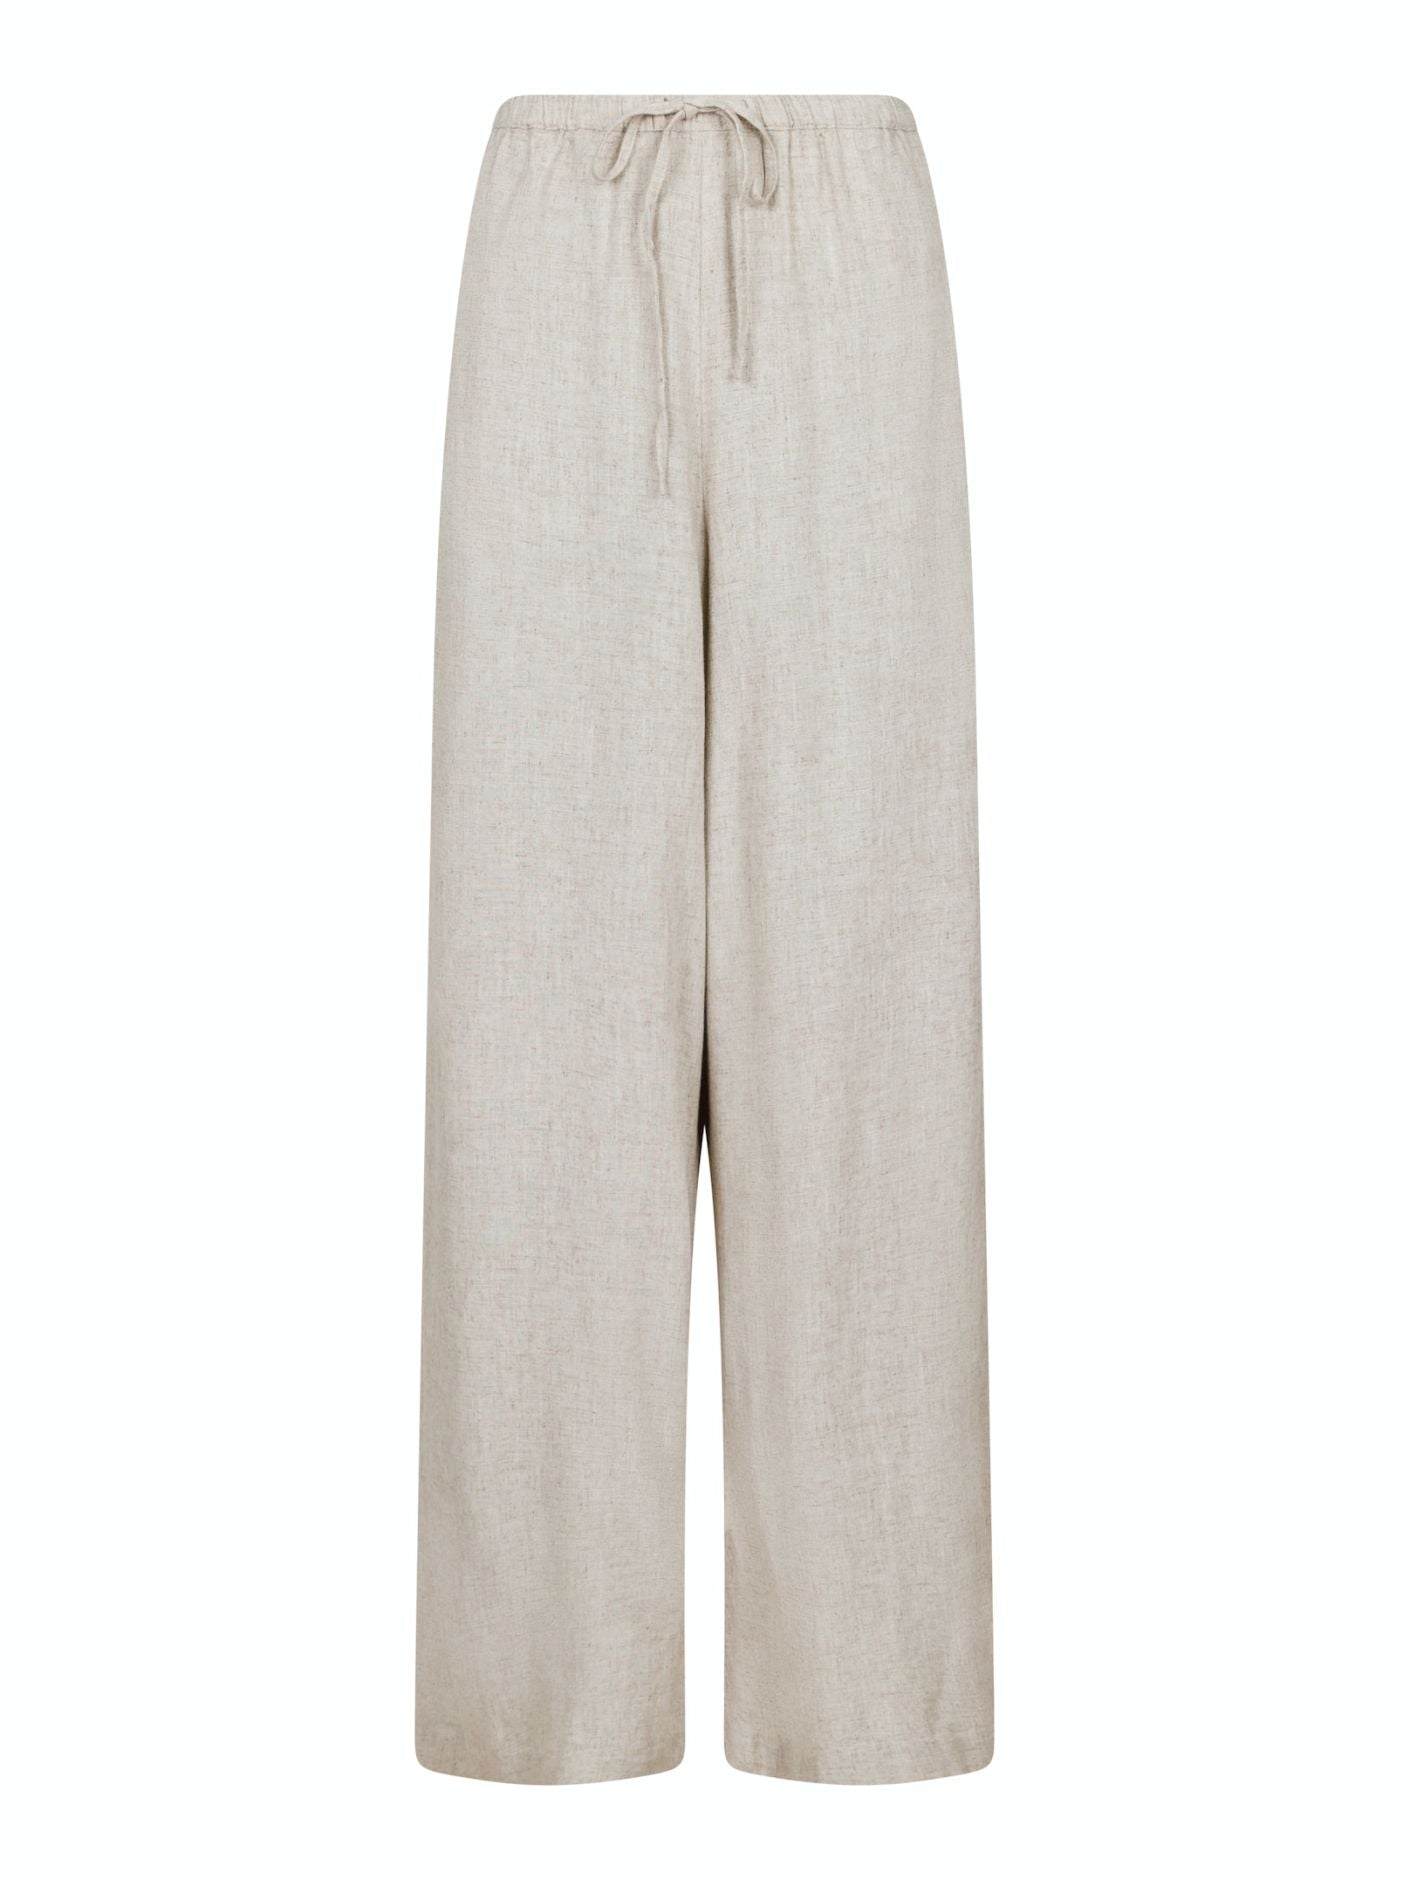 Lissabon Soft Linen Pants - Bukser